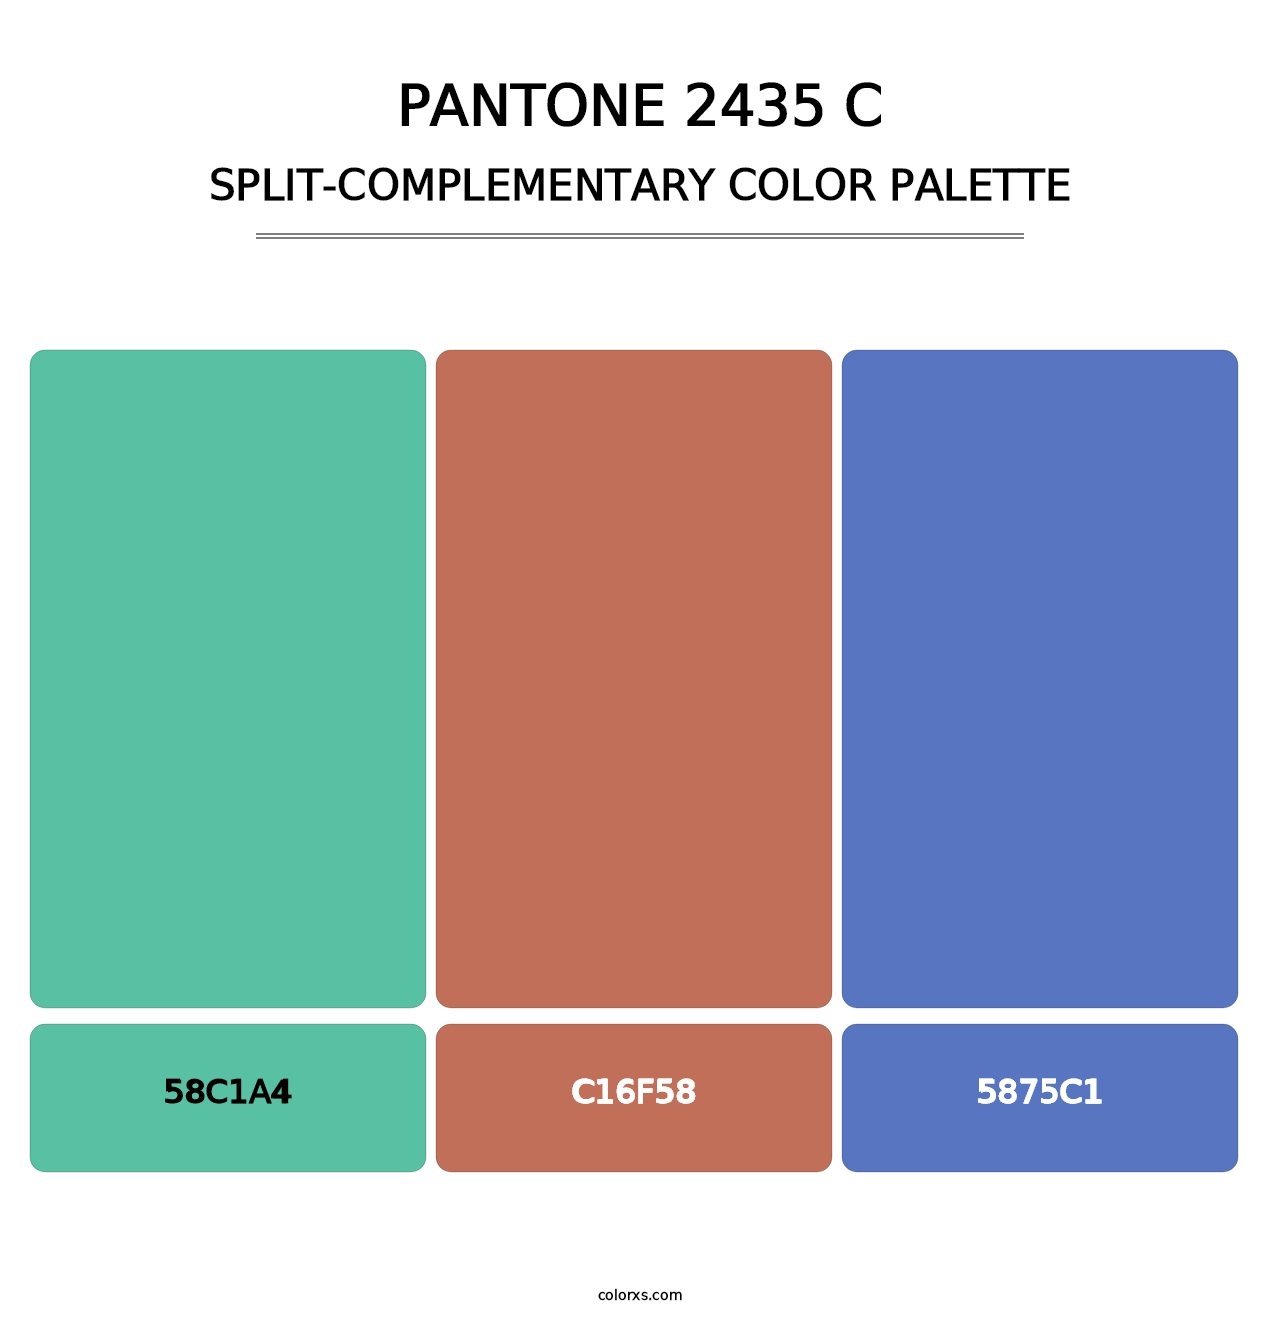 PANTONE 2435 C - Split-Complementary Color Palette